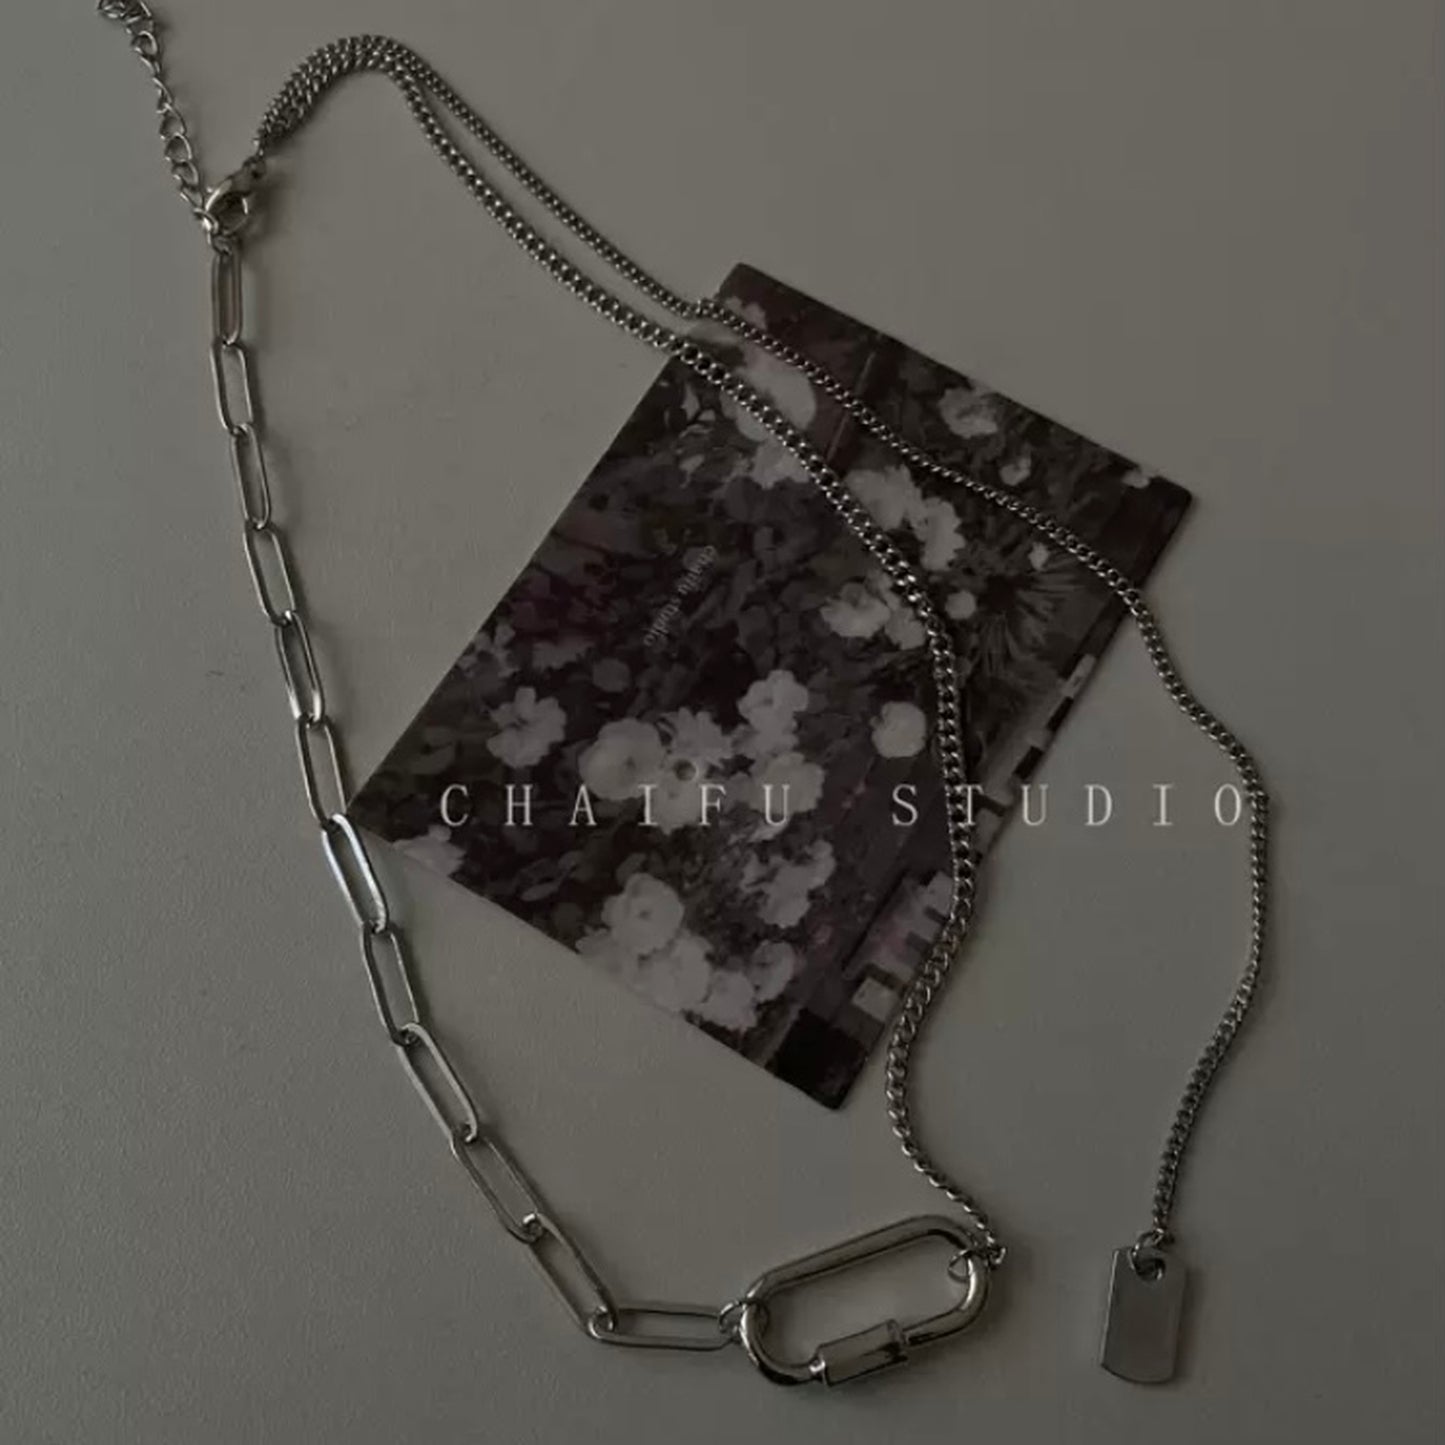 clip chain necklace 8837